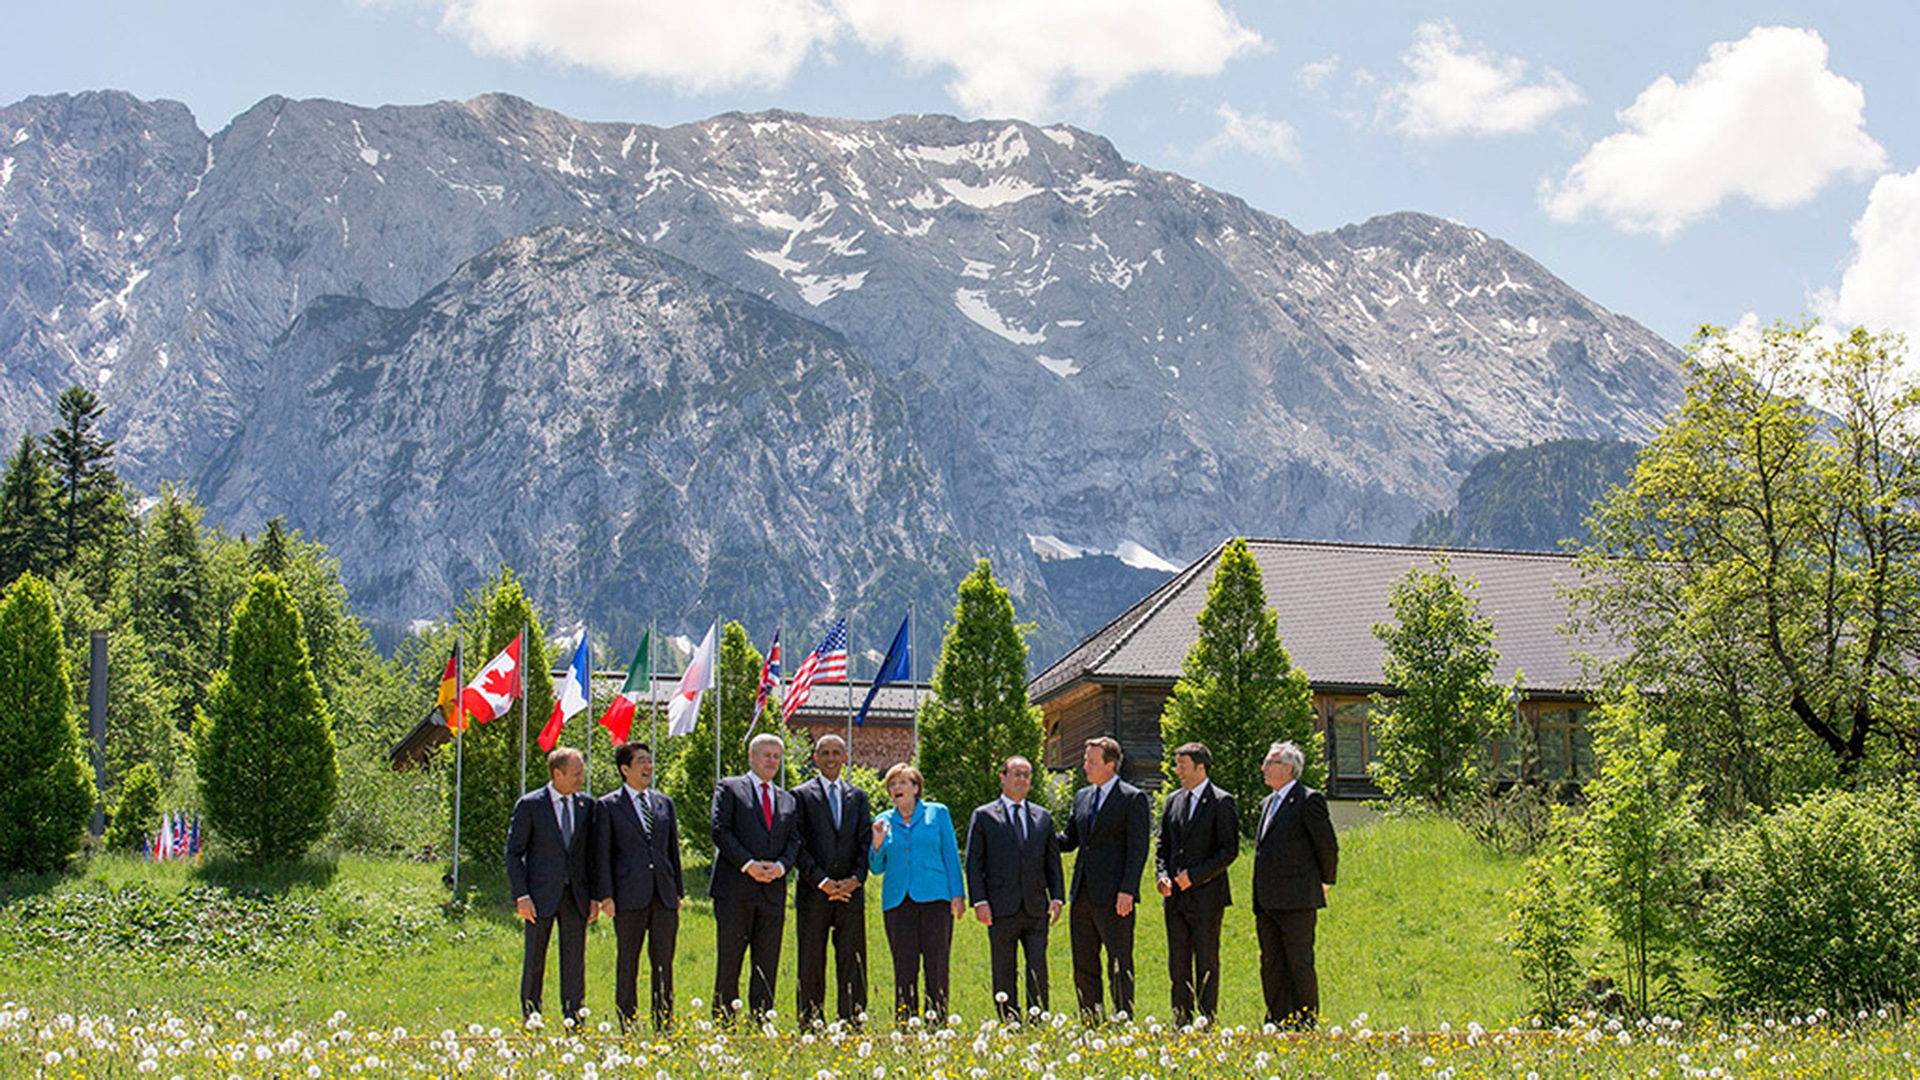 Gruppenfoto des G7-Gipfels im Juni 2015 auf Schloss Elmau in Bayern | dpa